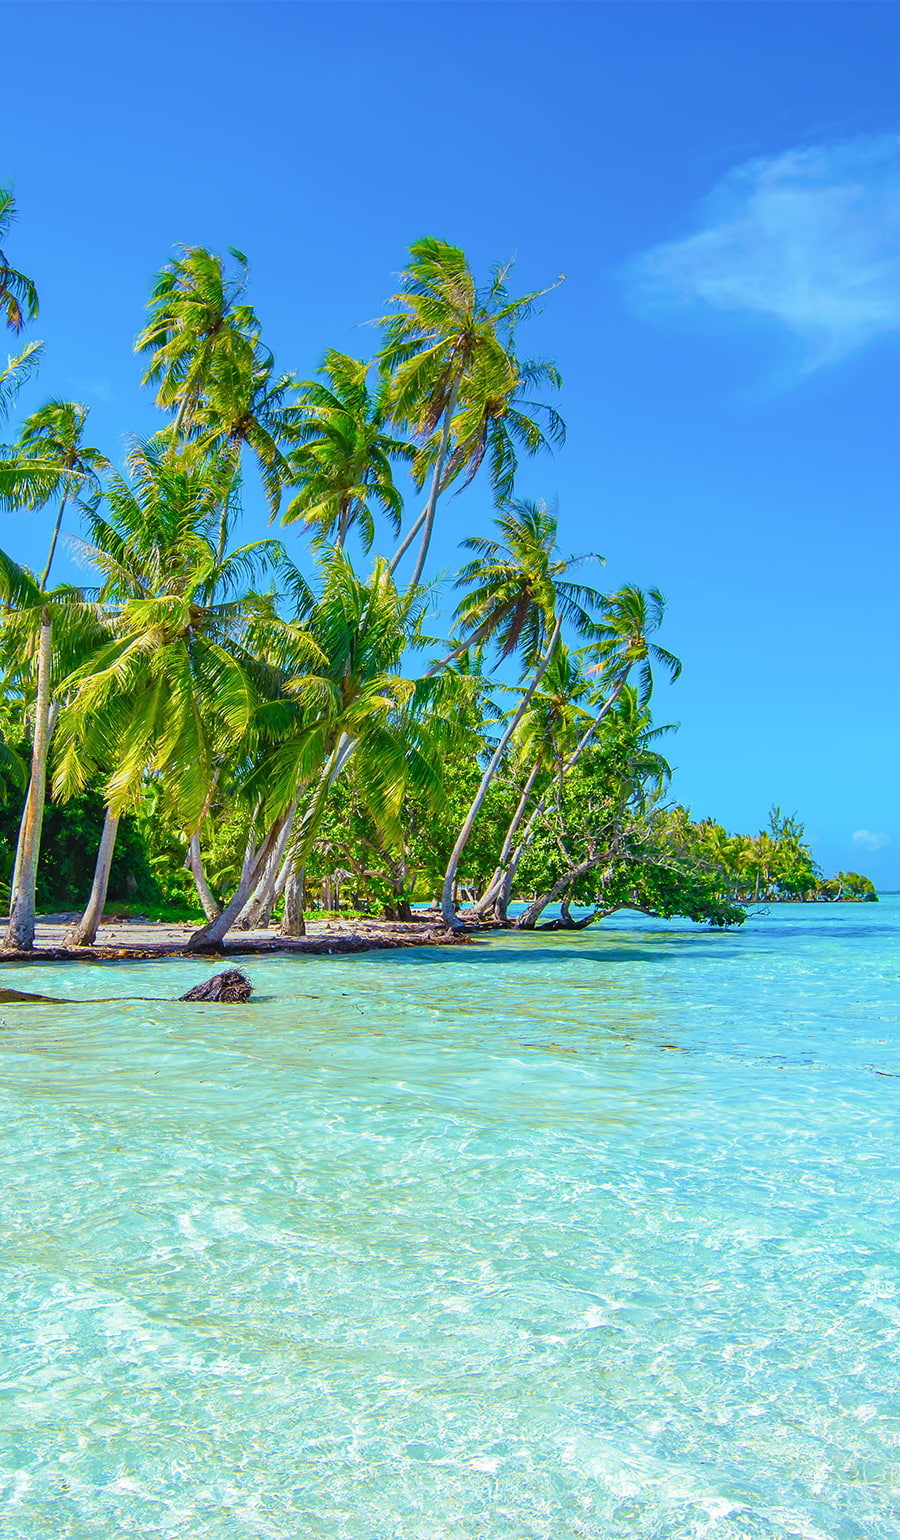 Magiska palmer och tropisk miljö på kryssning eller segling i Söderhavet